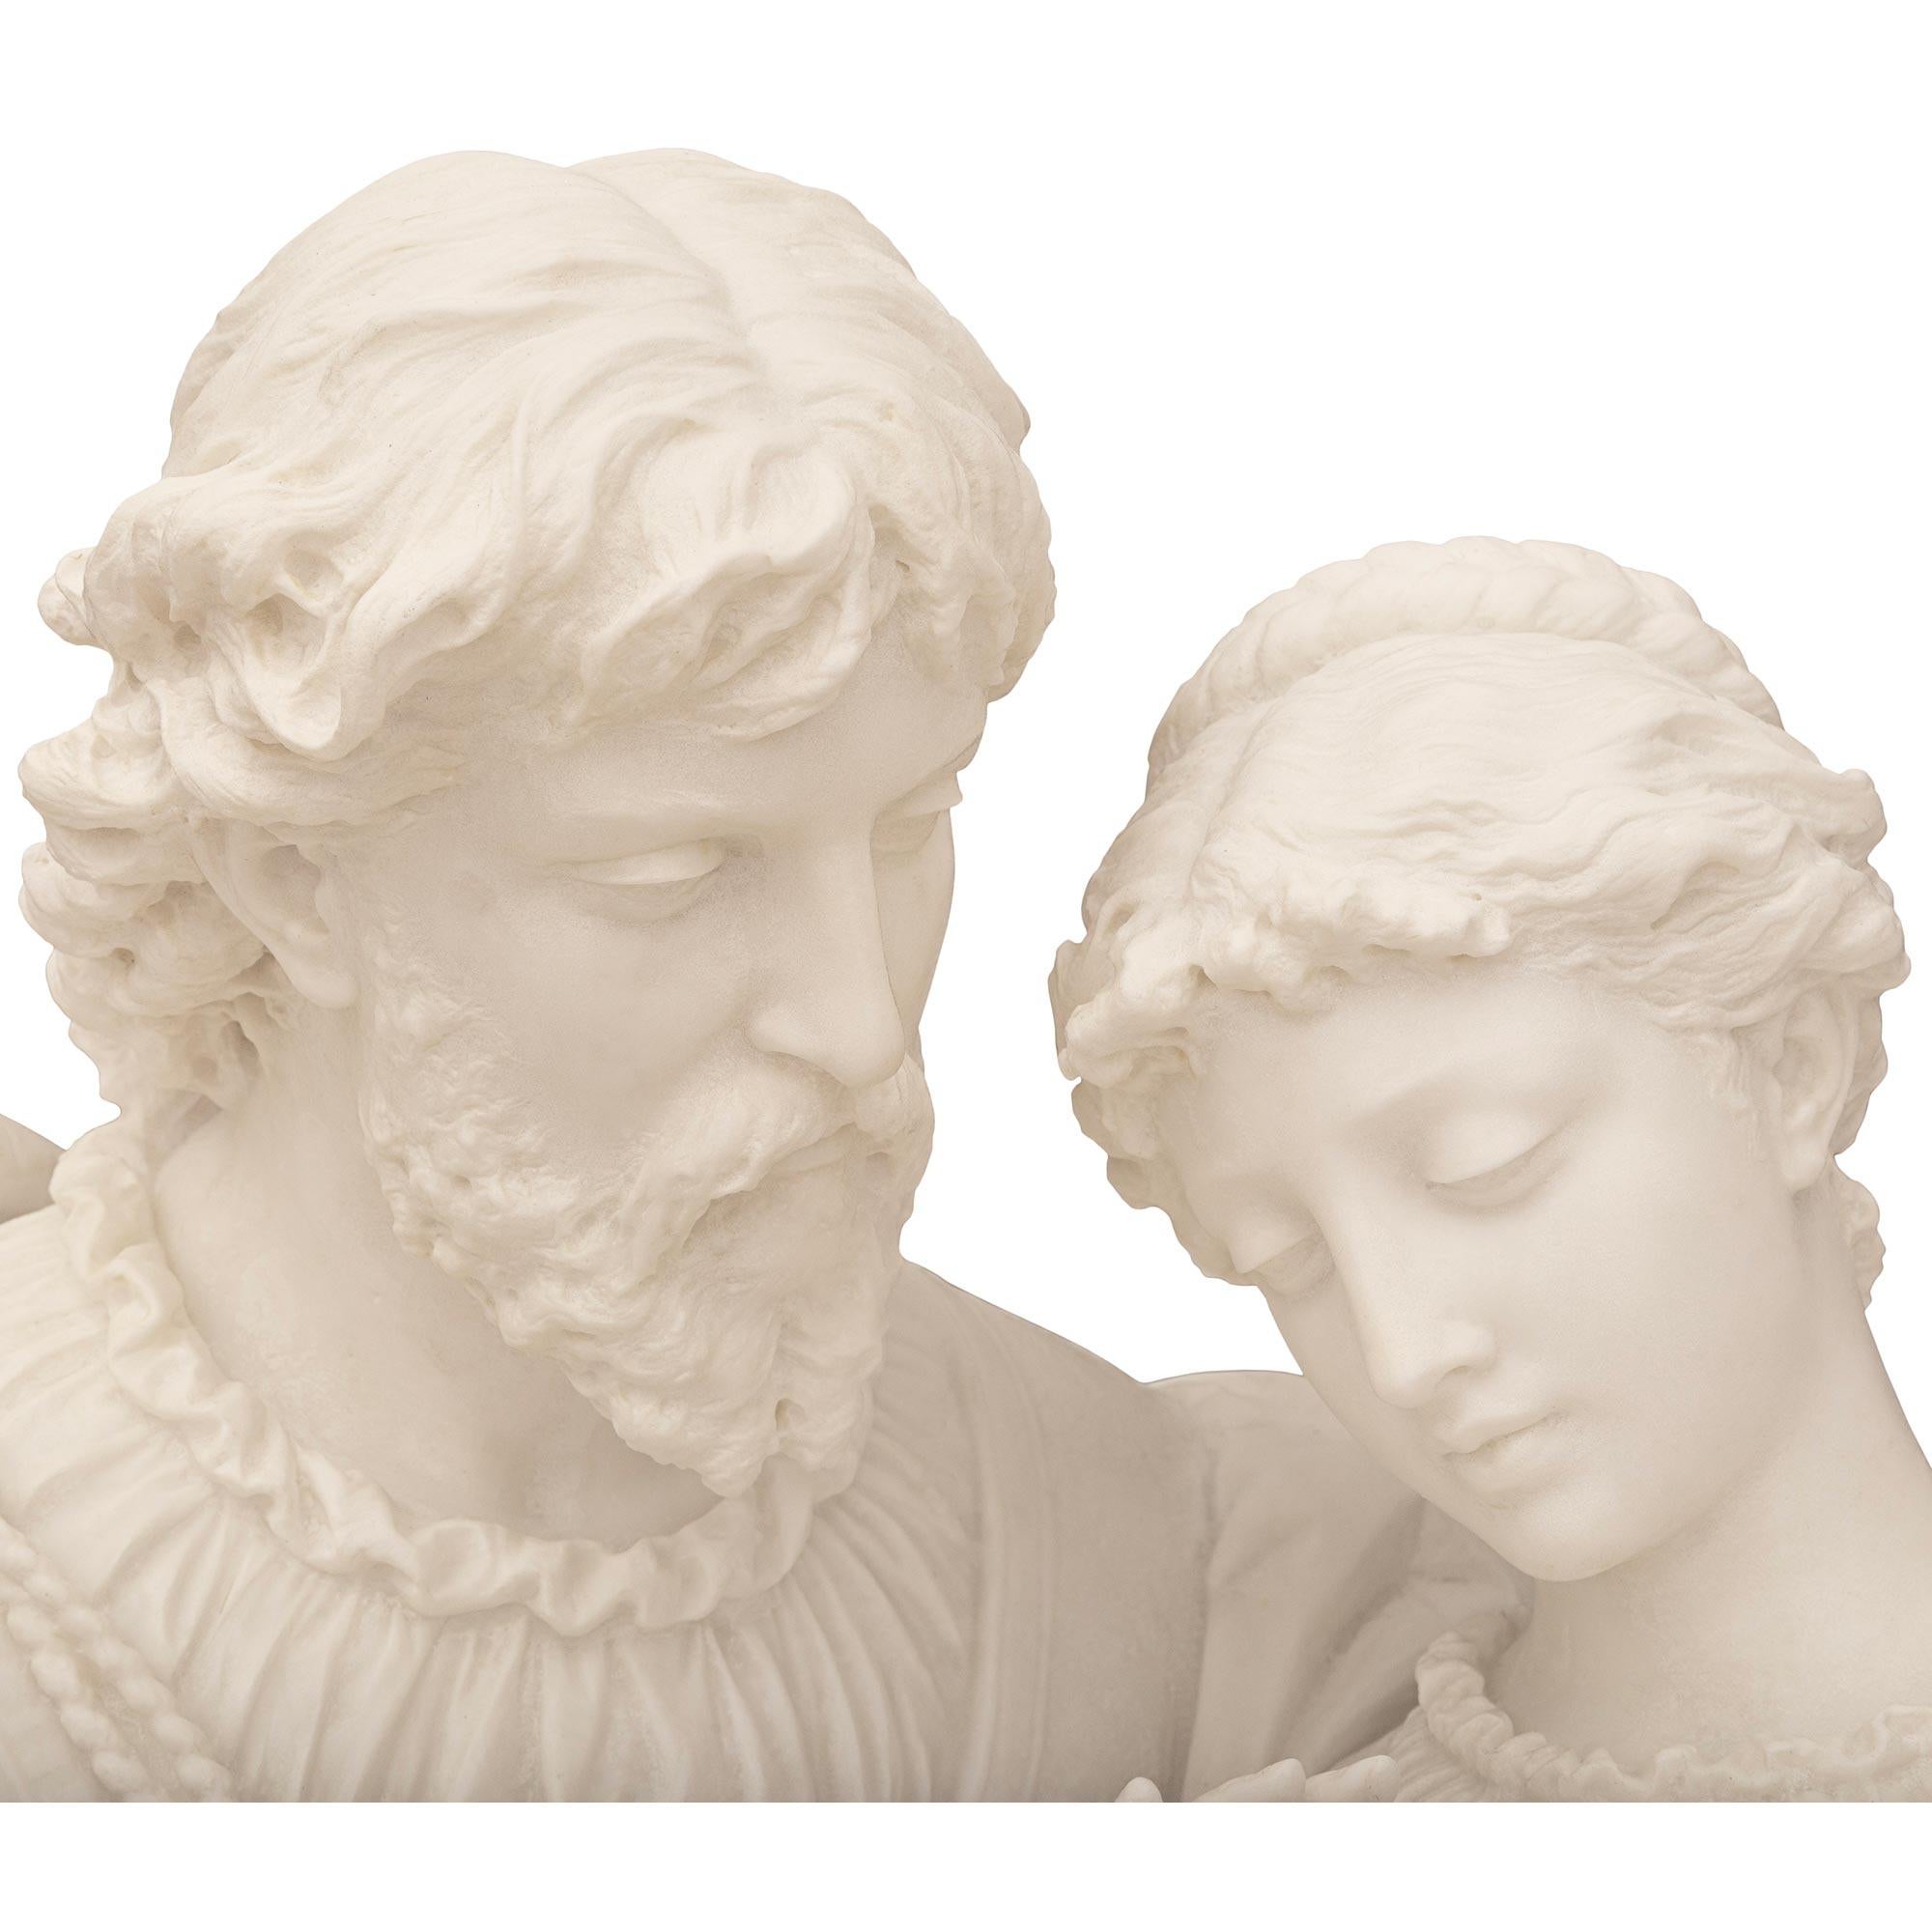 Une impressionnante statue de Paolo et Francesca en marbre blanc de Carrare et Rosso Levanto du XIXe siècle, signée P. Romanelli. Cette exquise sculpture de Paolo et Francesca représente une scène de la divine comédie de Dante. Cette statue est